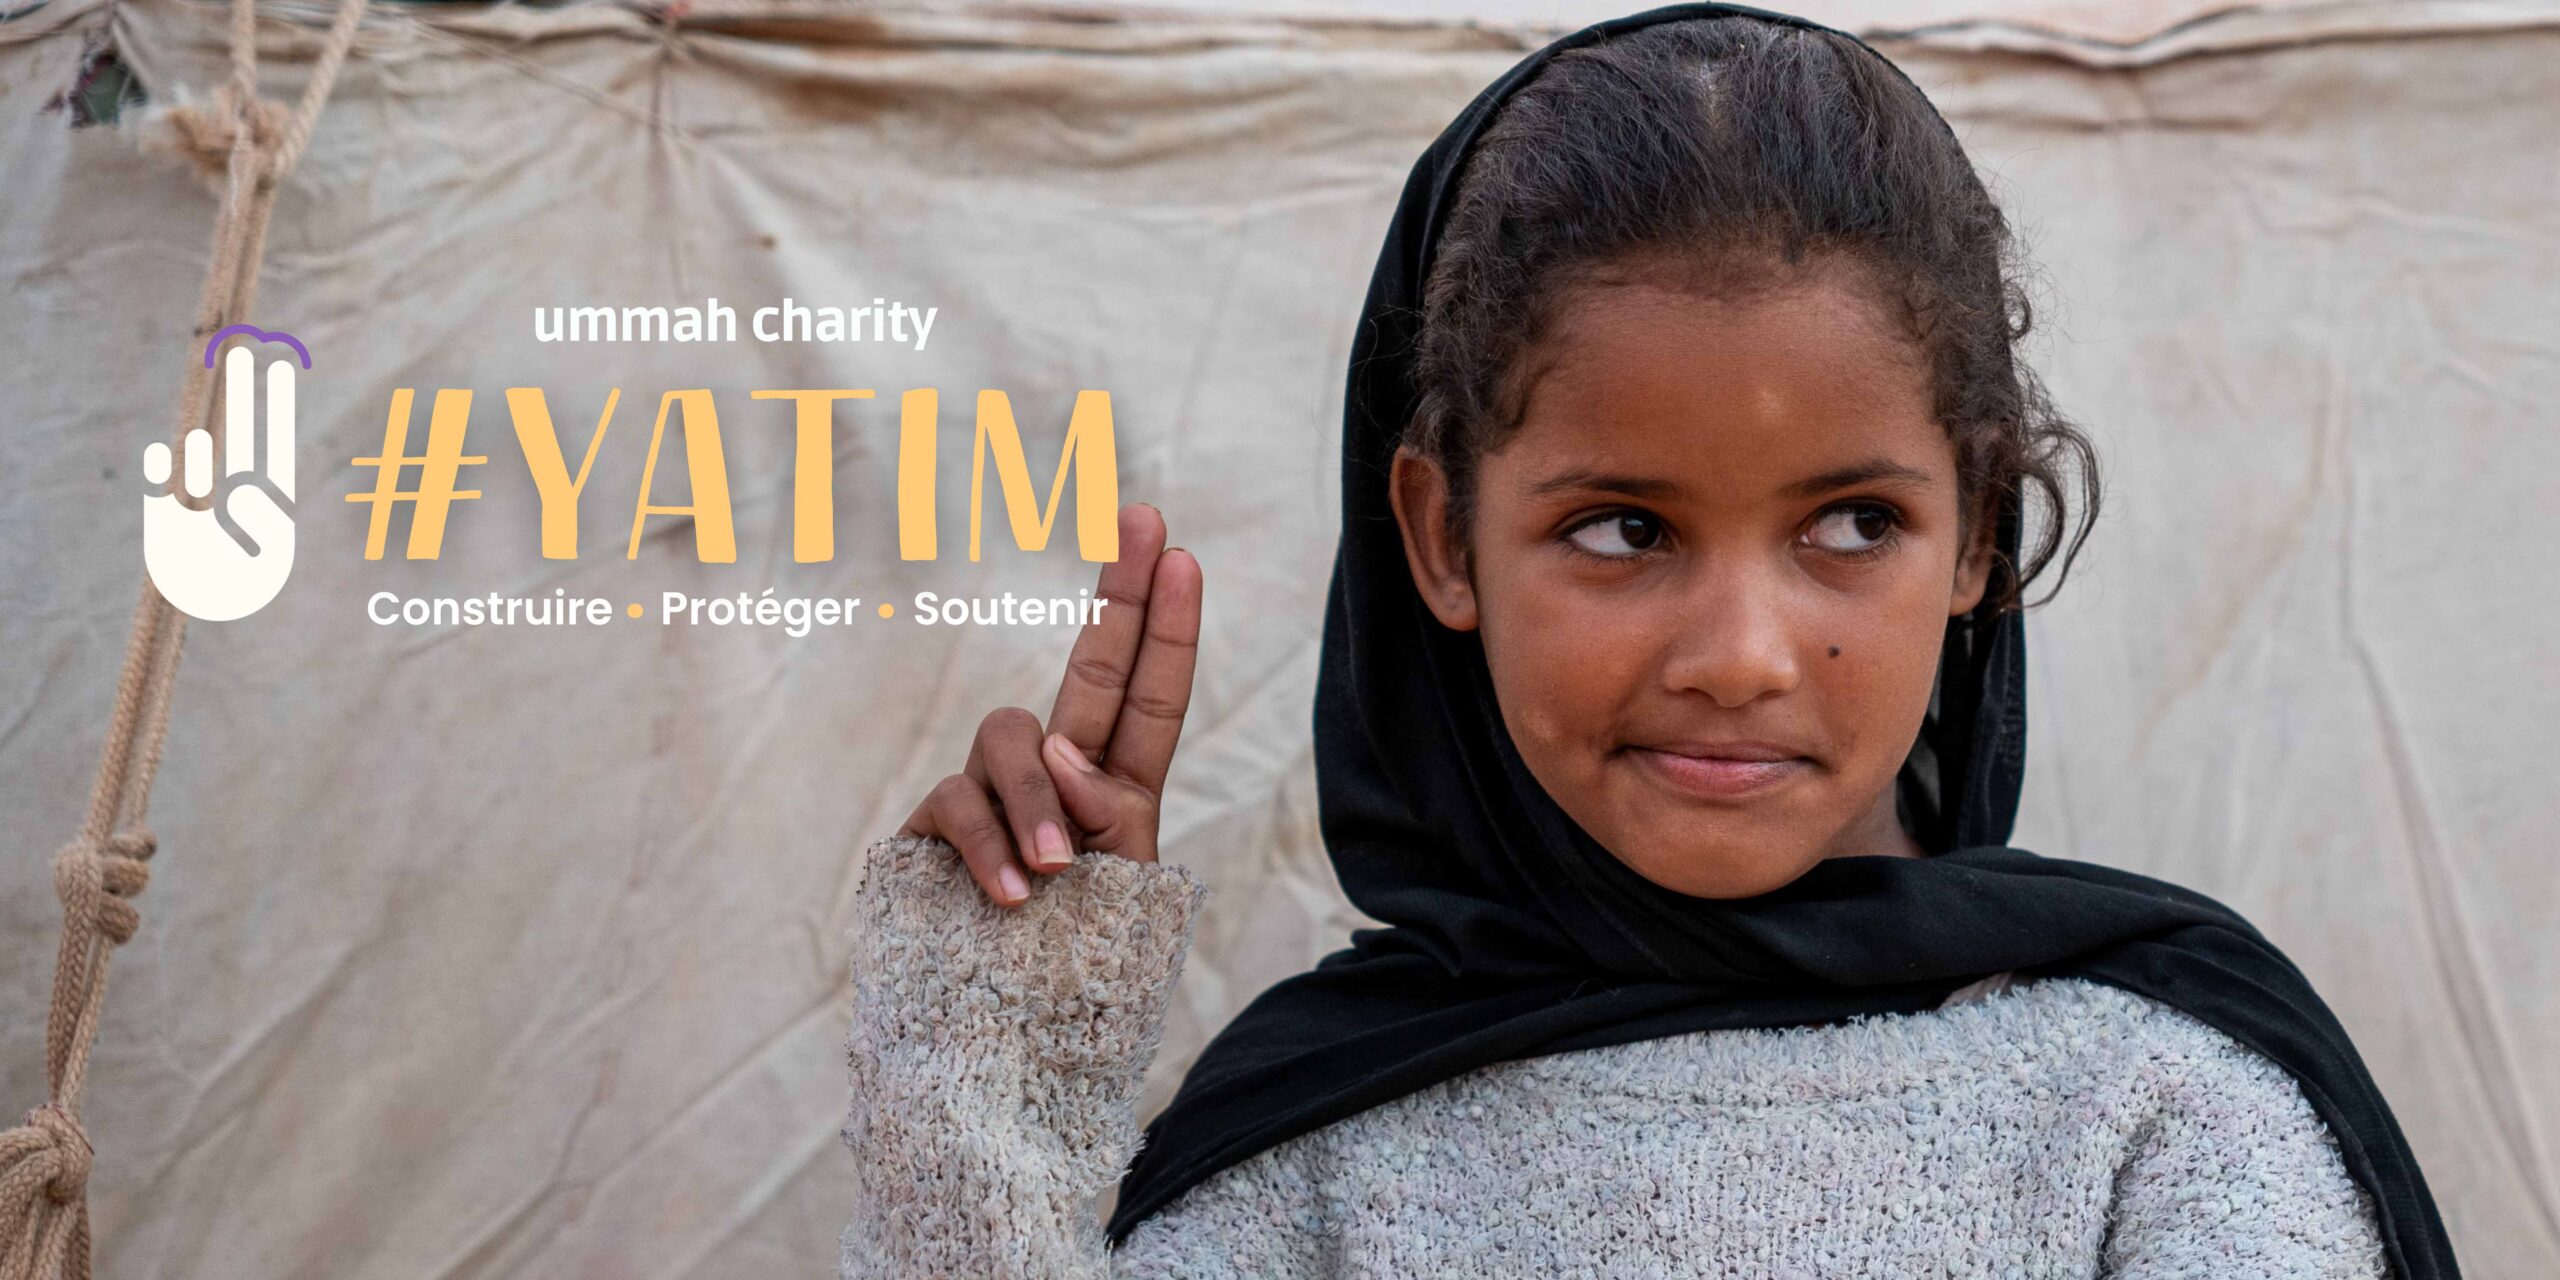 Image représentant un enfant souriant bénéficiant du soutien du fonds commun #YATIM dédié aux orphelins.